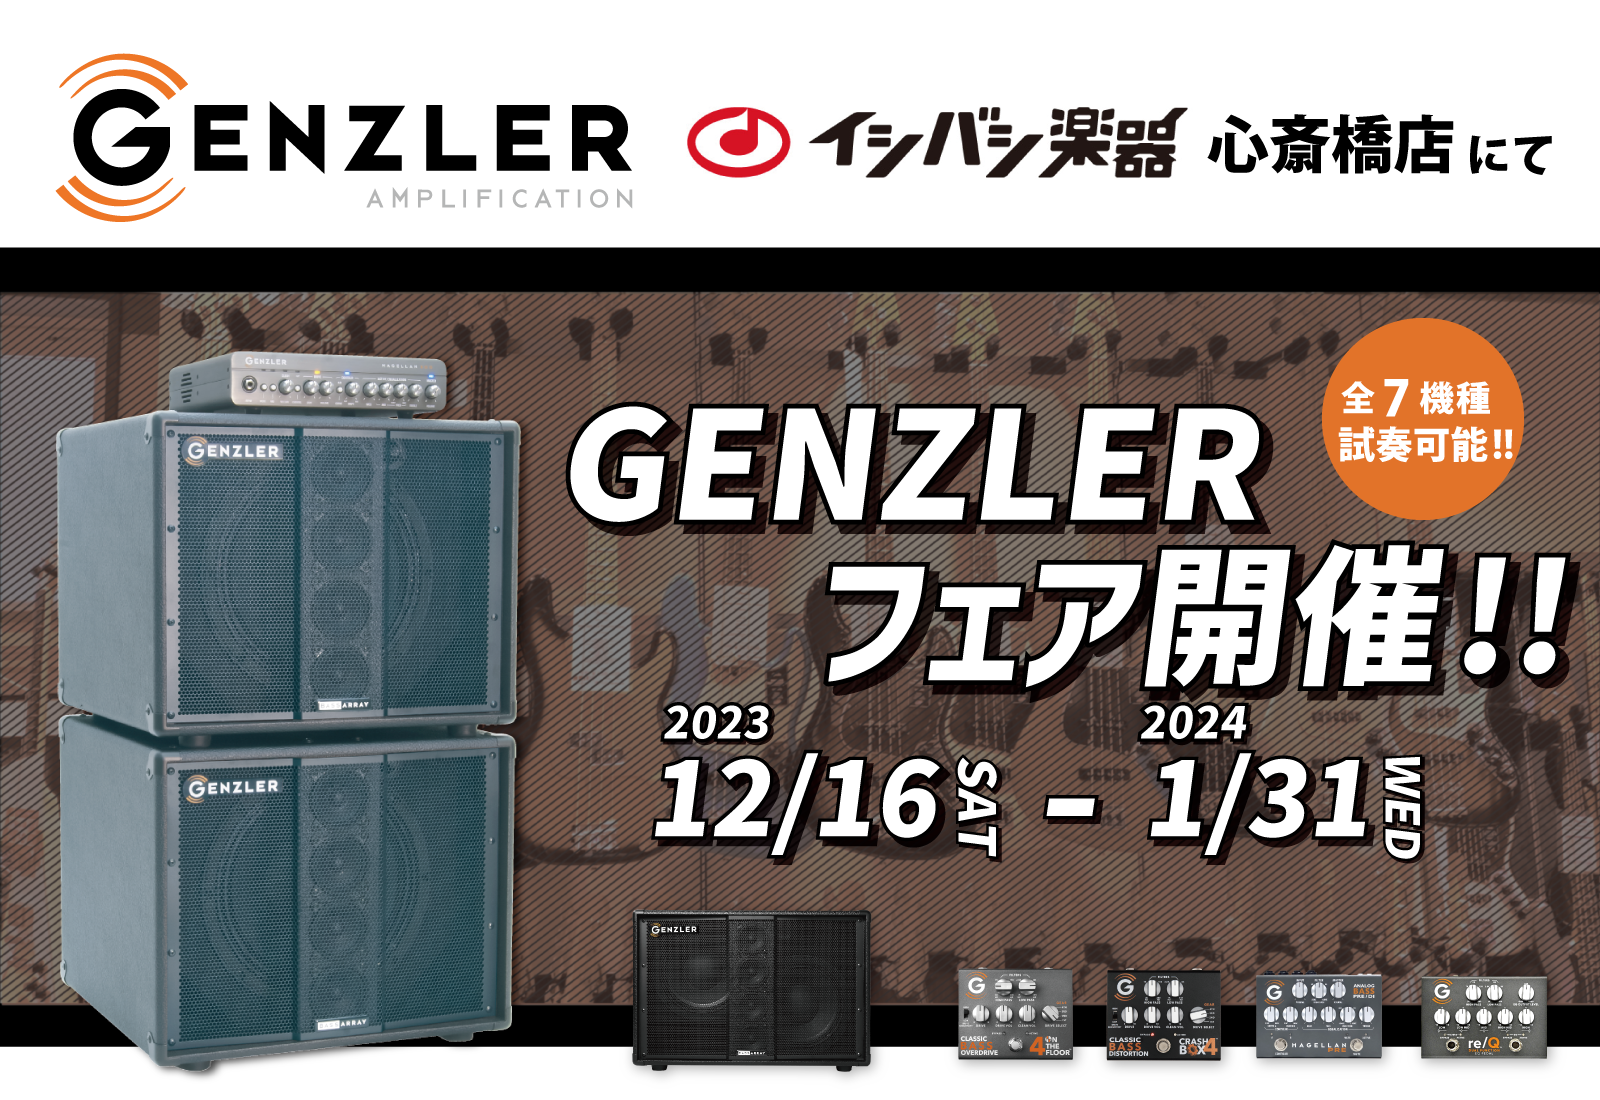 【試奏情報】イシバシ楽器 心斎橋店にてGENZLERフェアを開催いたします。